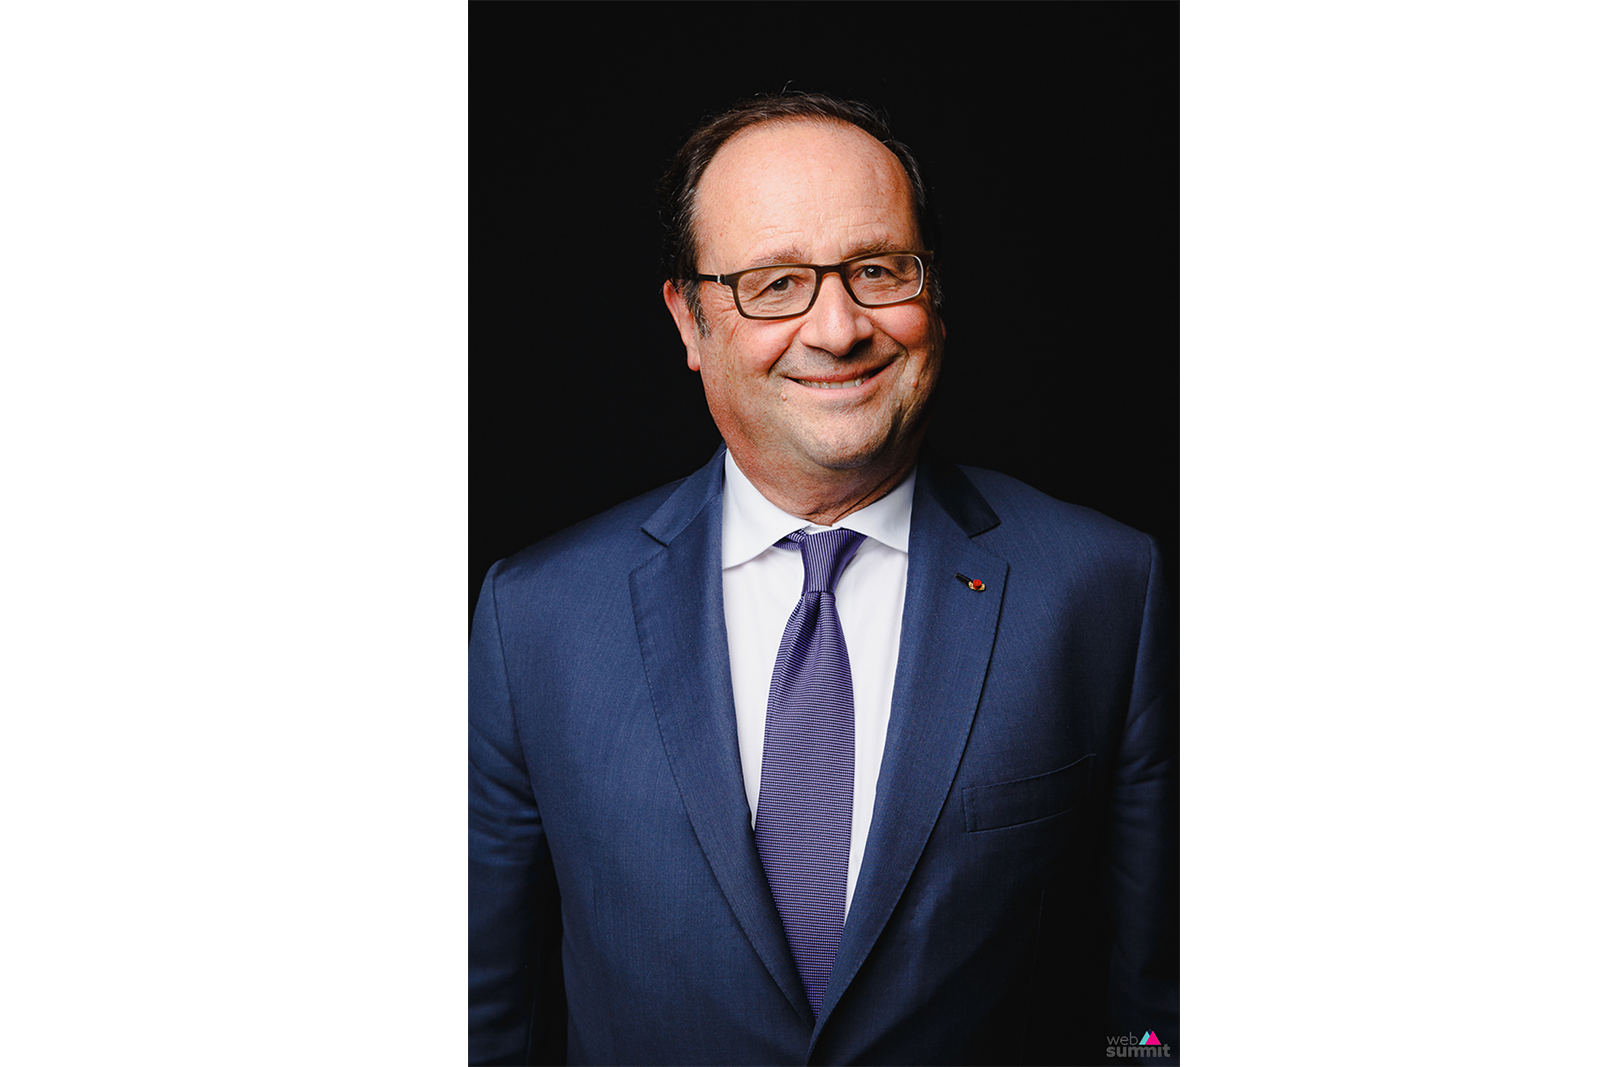 François Hollande, former President of France (2012-2017)